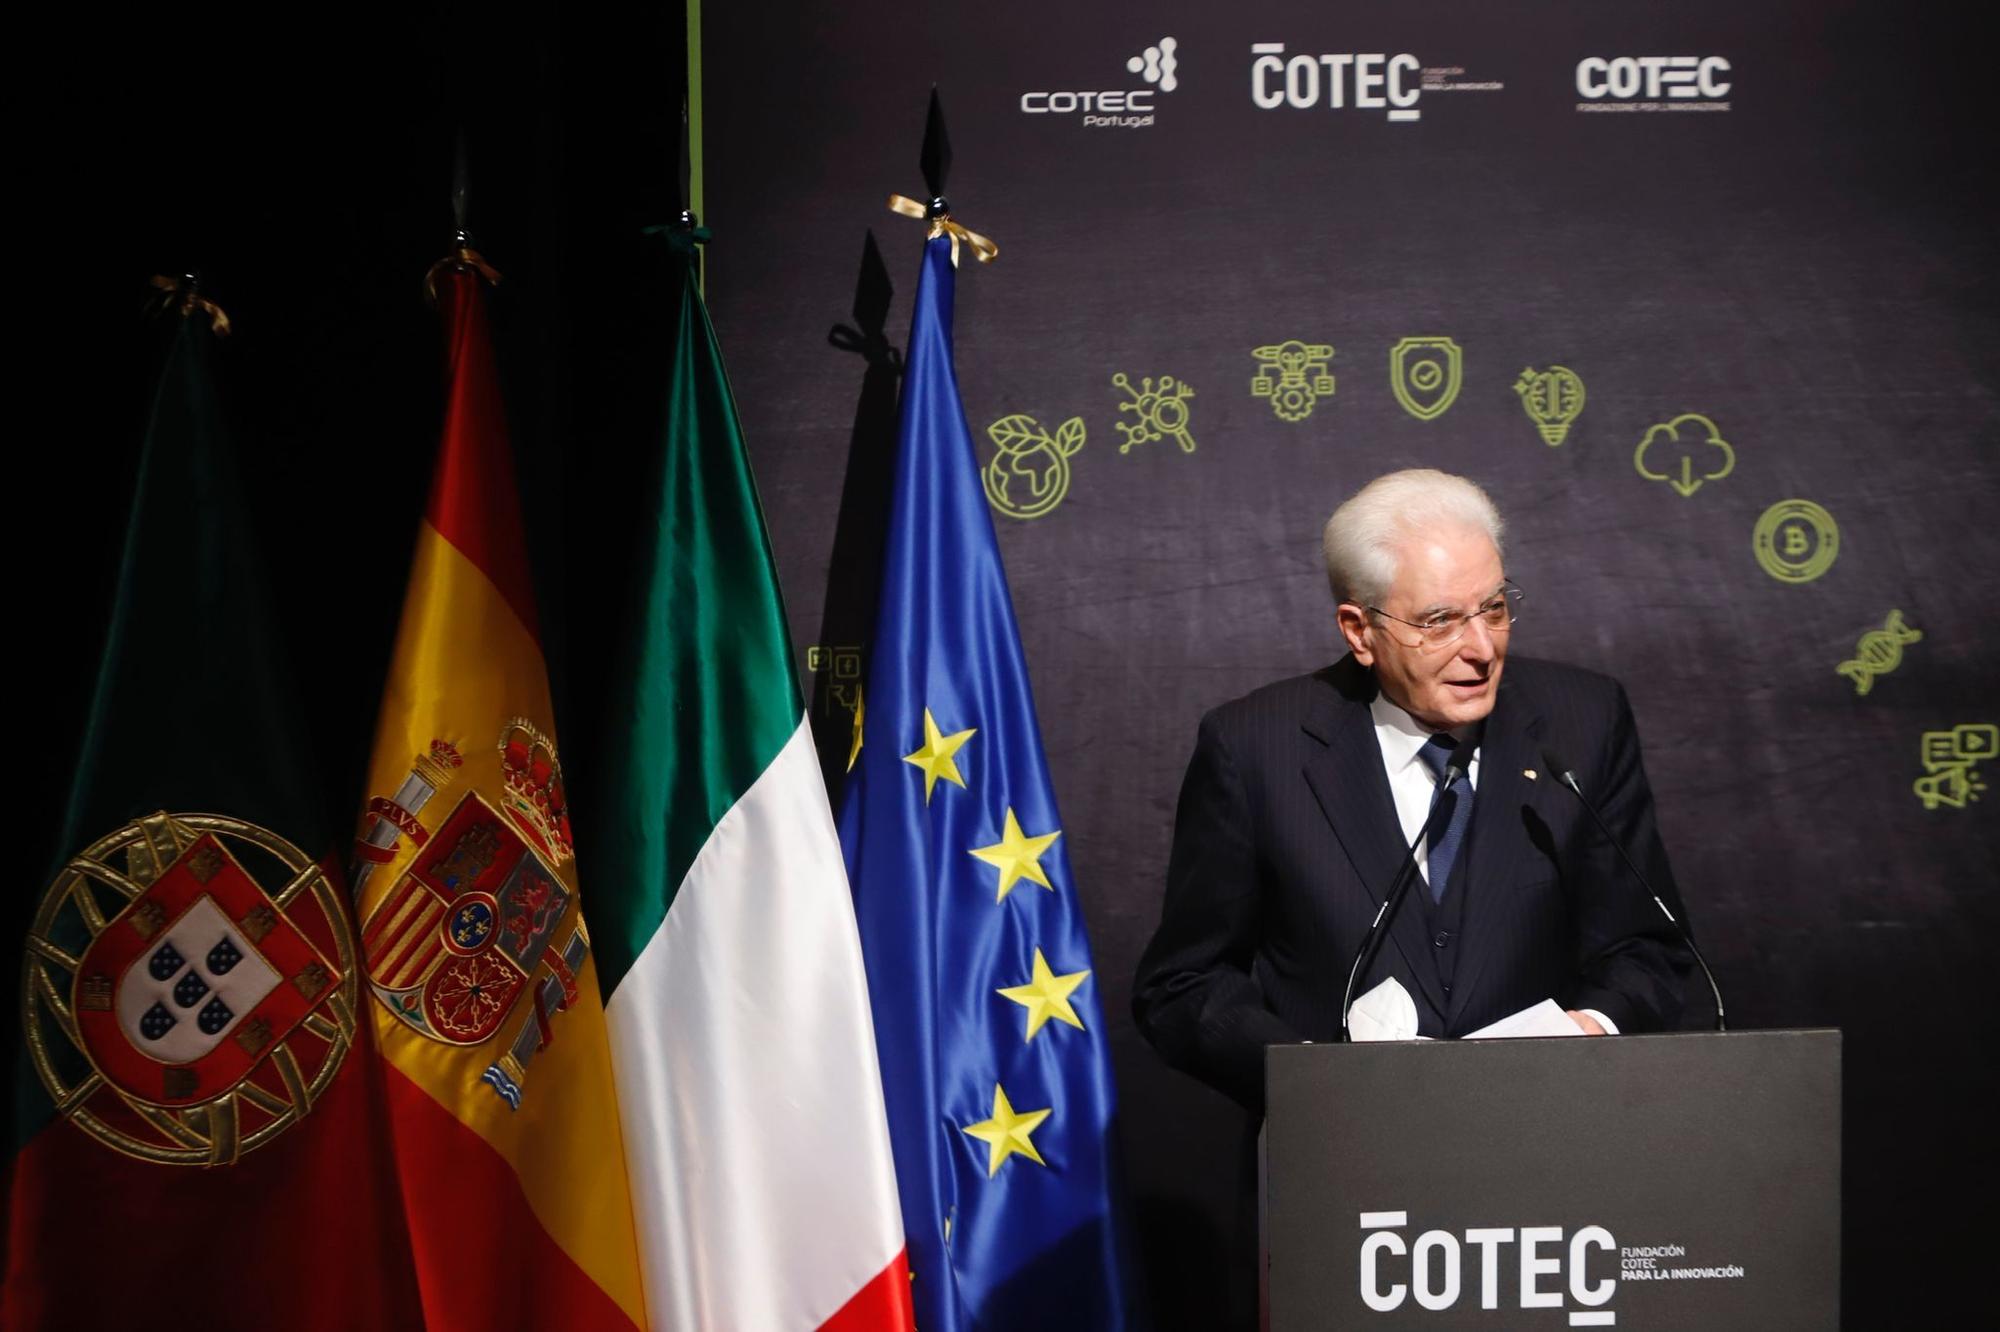 El Rey Felipe VI preside en Málaga la Cumbre Cotec